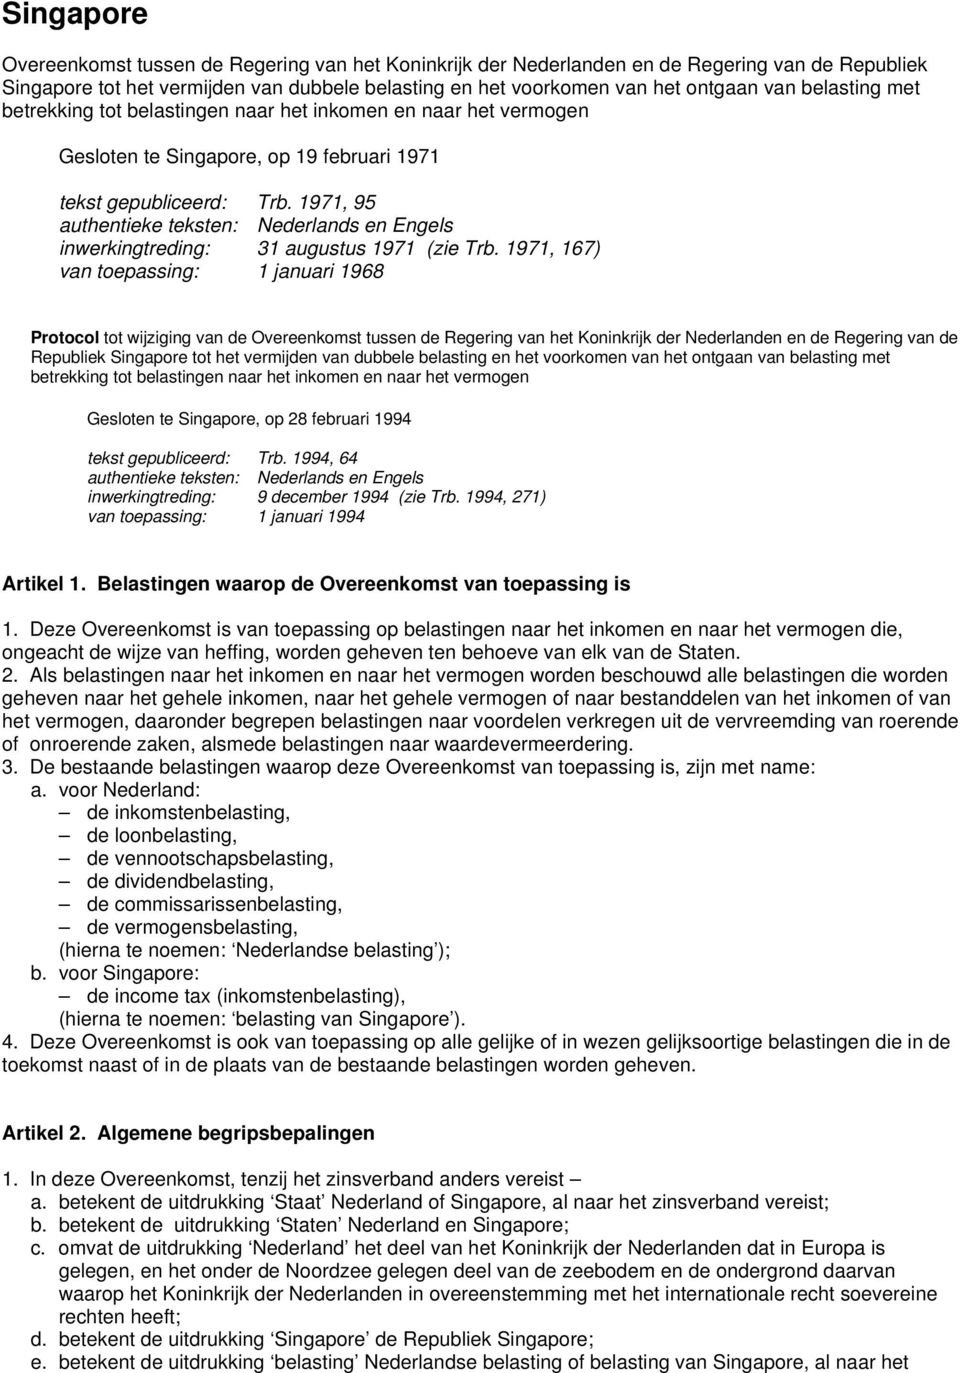 1971, 95 authentieke teksten: Nederlands en Engels inwerkingtreding: 31 augustus 1971 (zie Trb.